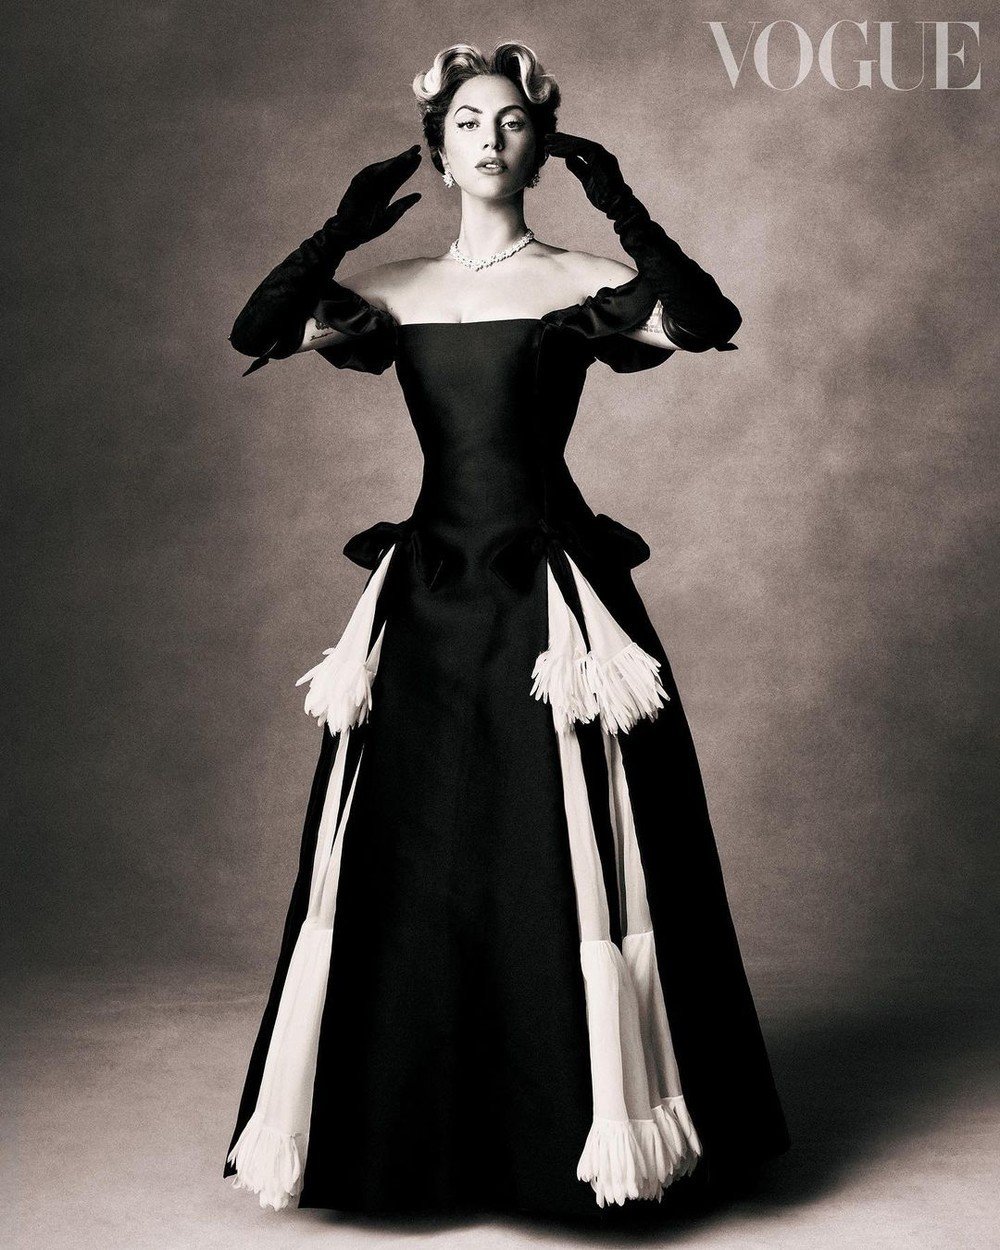 Lady Gaga v magazínu Vogue